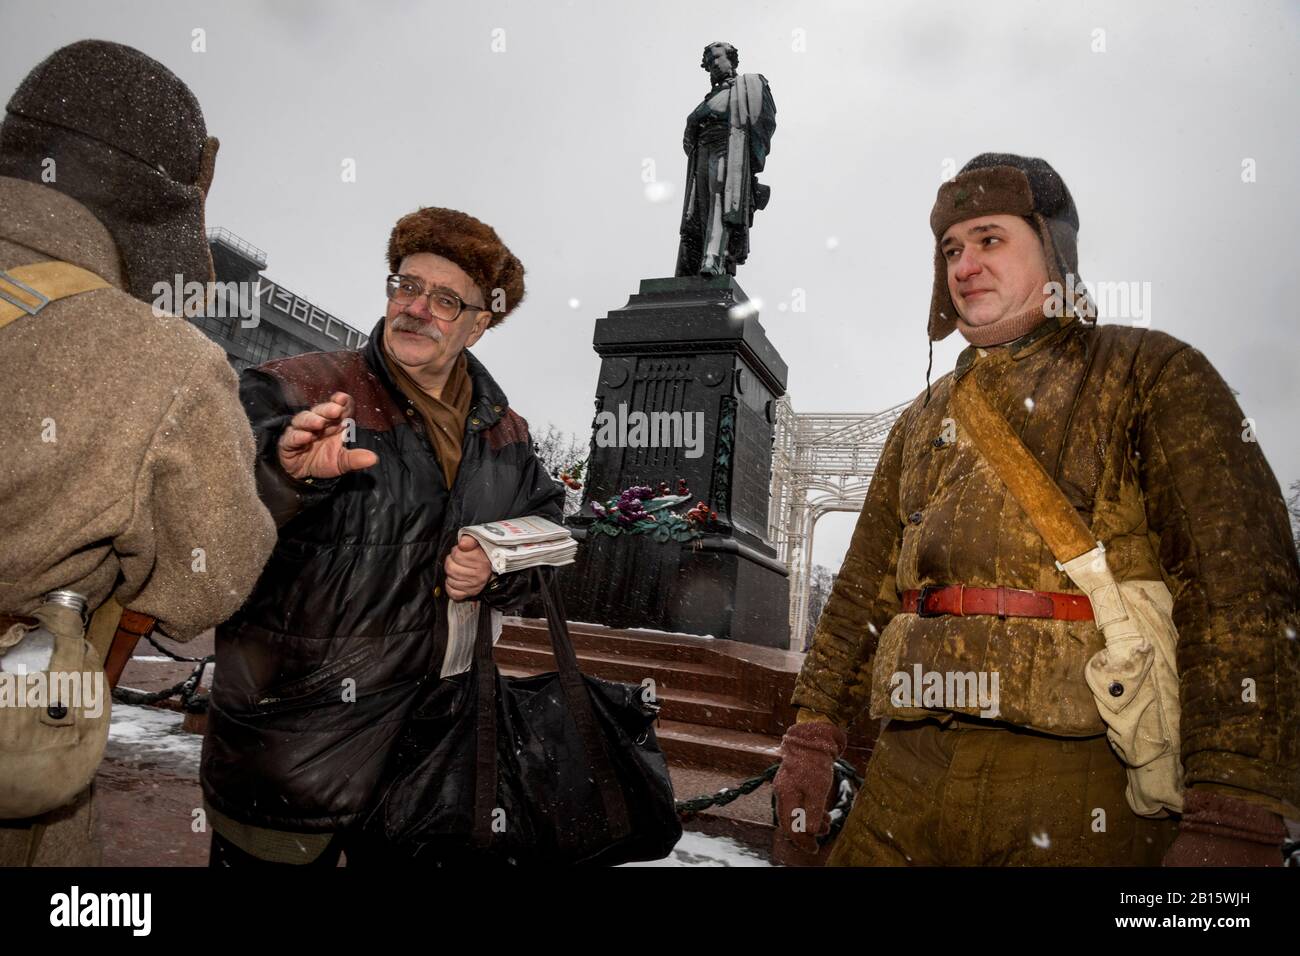 Moscou, Russie. 23 février 2020 Personnes en uniforme de la Grande Guerre patriotique de 1941-1945 sur la place Pouchkine au centre de Moscou lors de la célébration du 102ème anniversaire de la fondation de l'armée rouge soviétique et de la Marine soviétique, Russie Banque D'Images